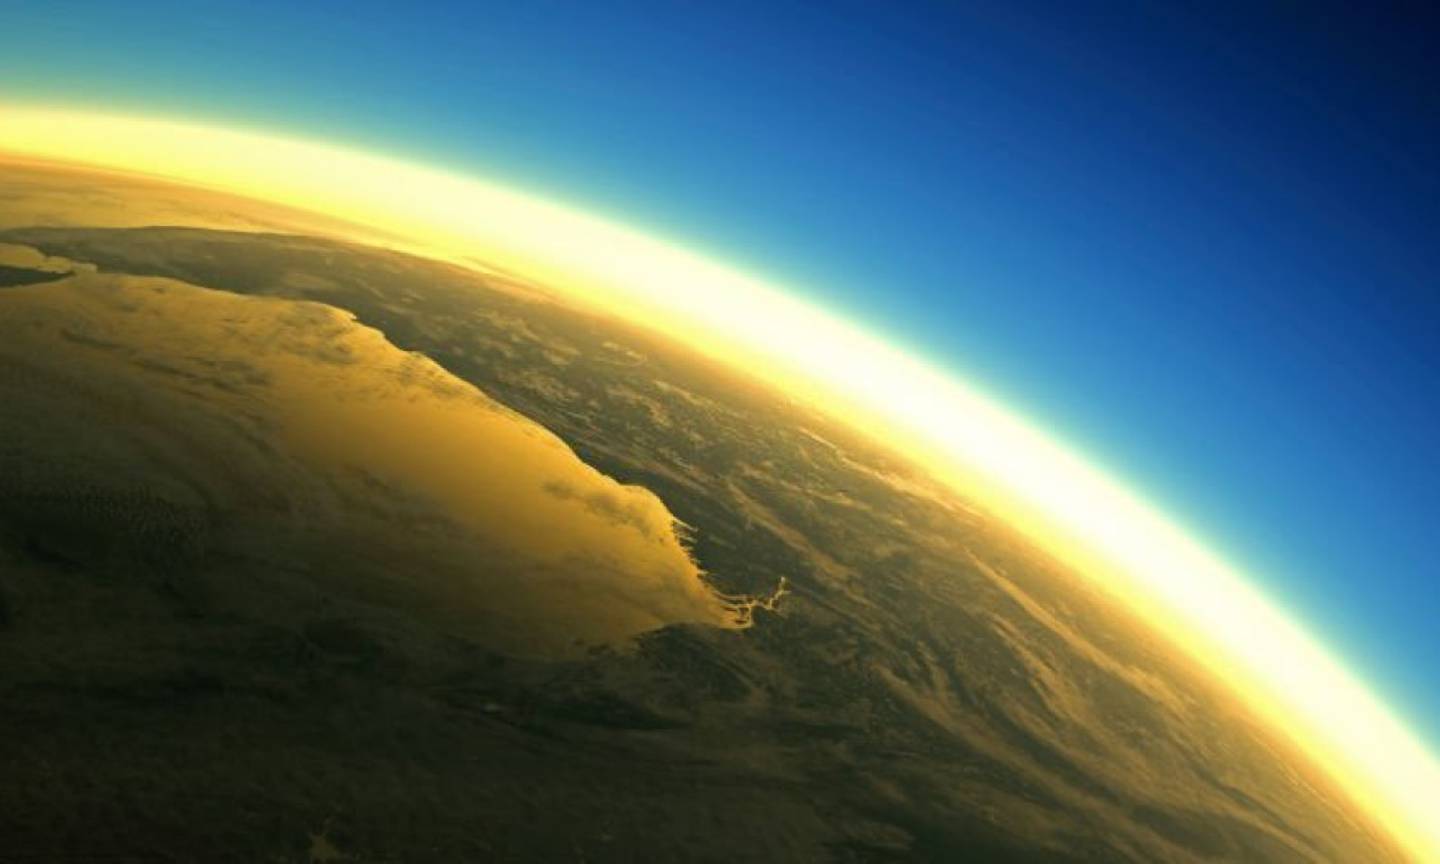 Capa de ozono de la Tierra